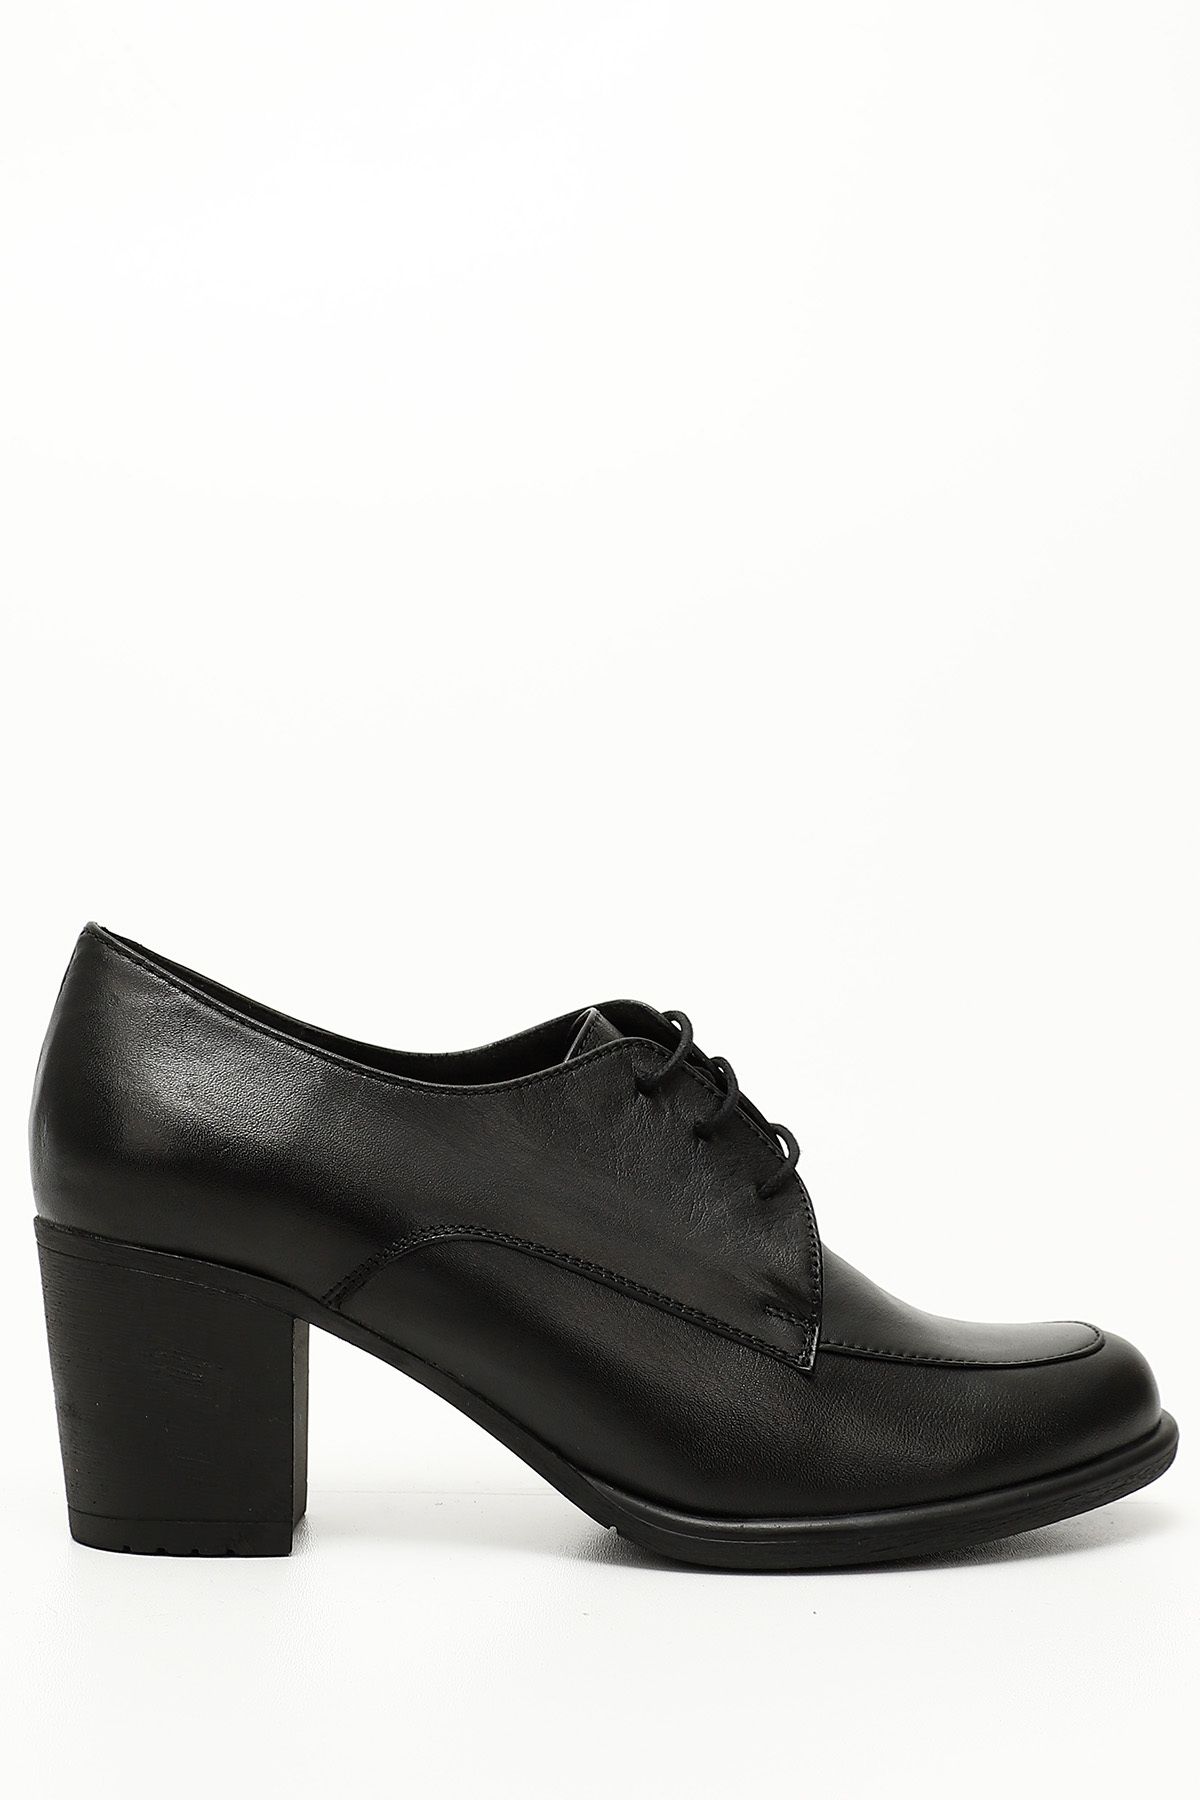 GÖNDERİ(R) Siyah Gön Hakiki Deri Yuvarlak Burun Kalın Topuklu Kauçuk Taban Bağcıklı Kadın Ayakkabı 24071